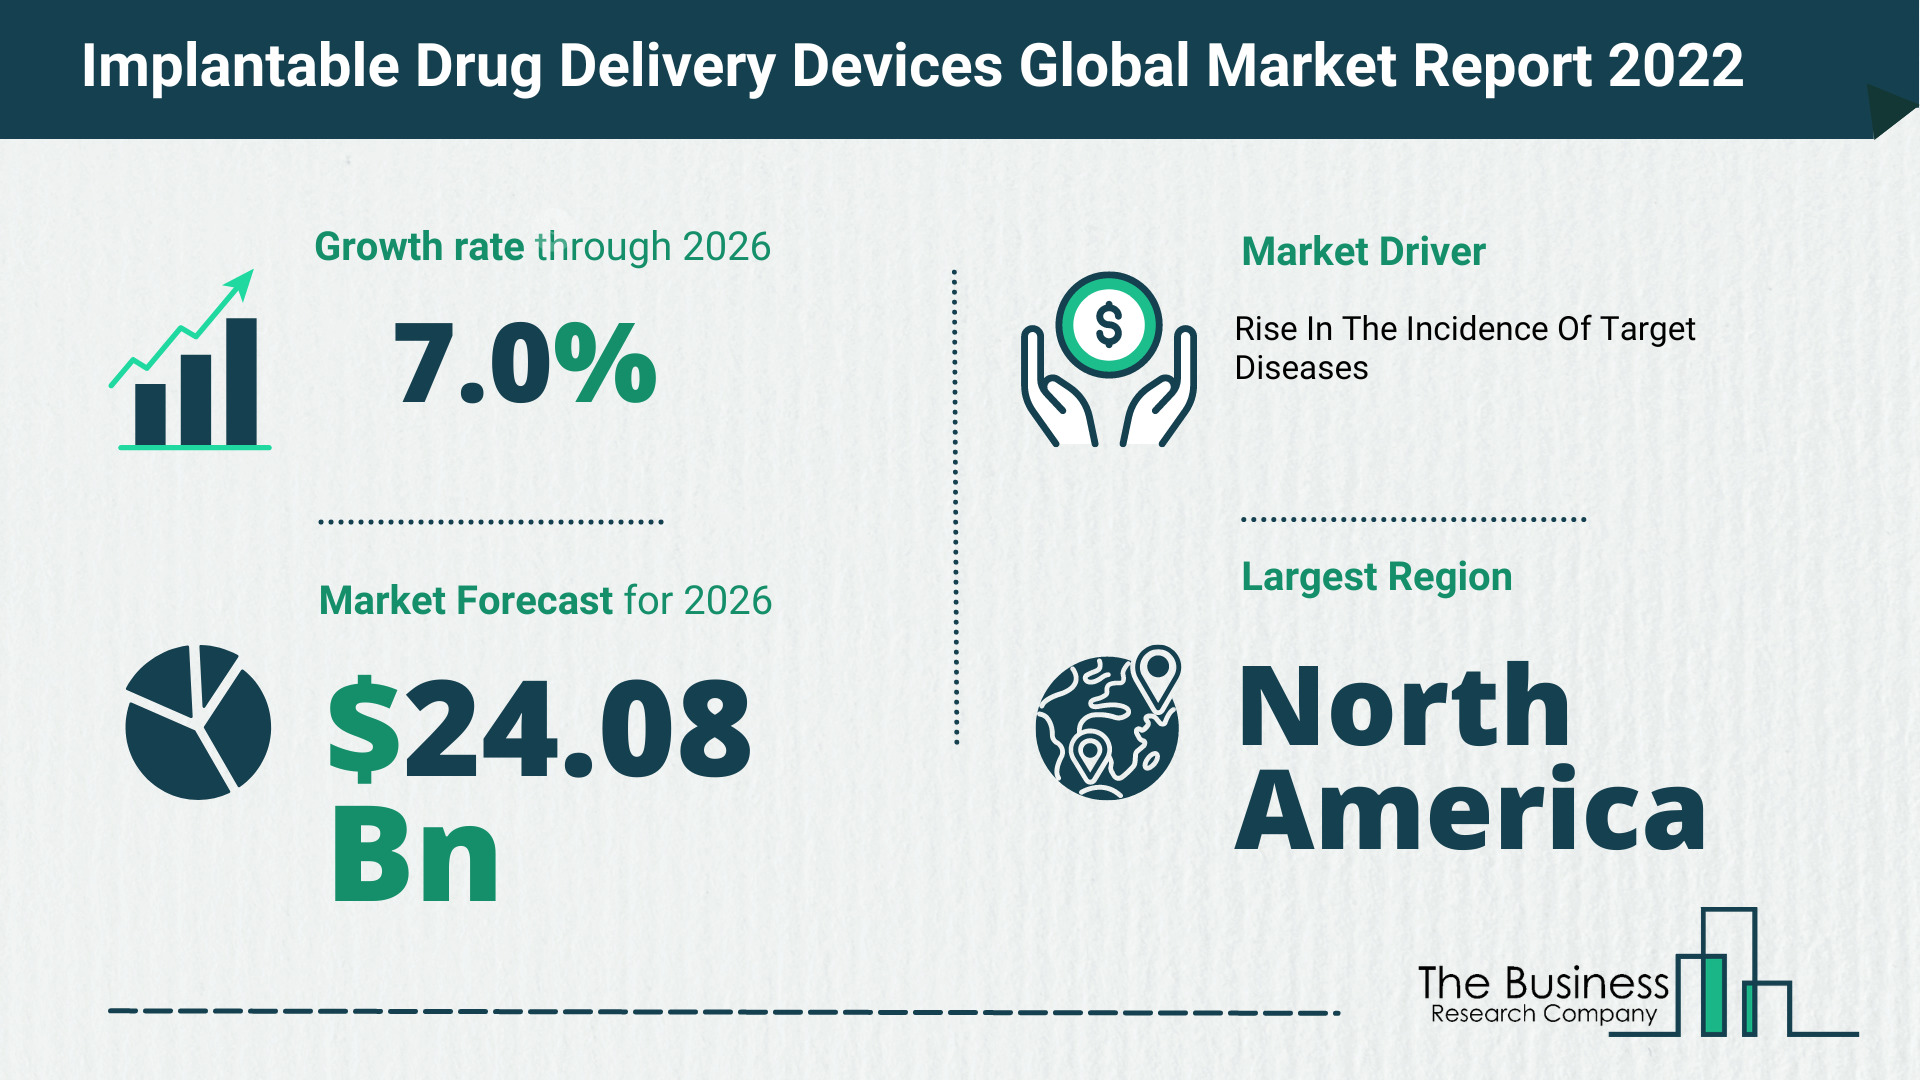 Global Implantable Drug Delivery Devices Market Size